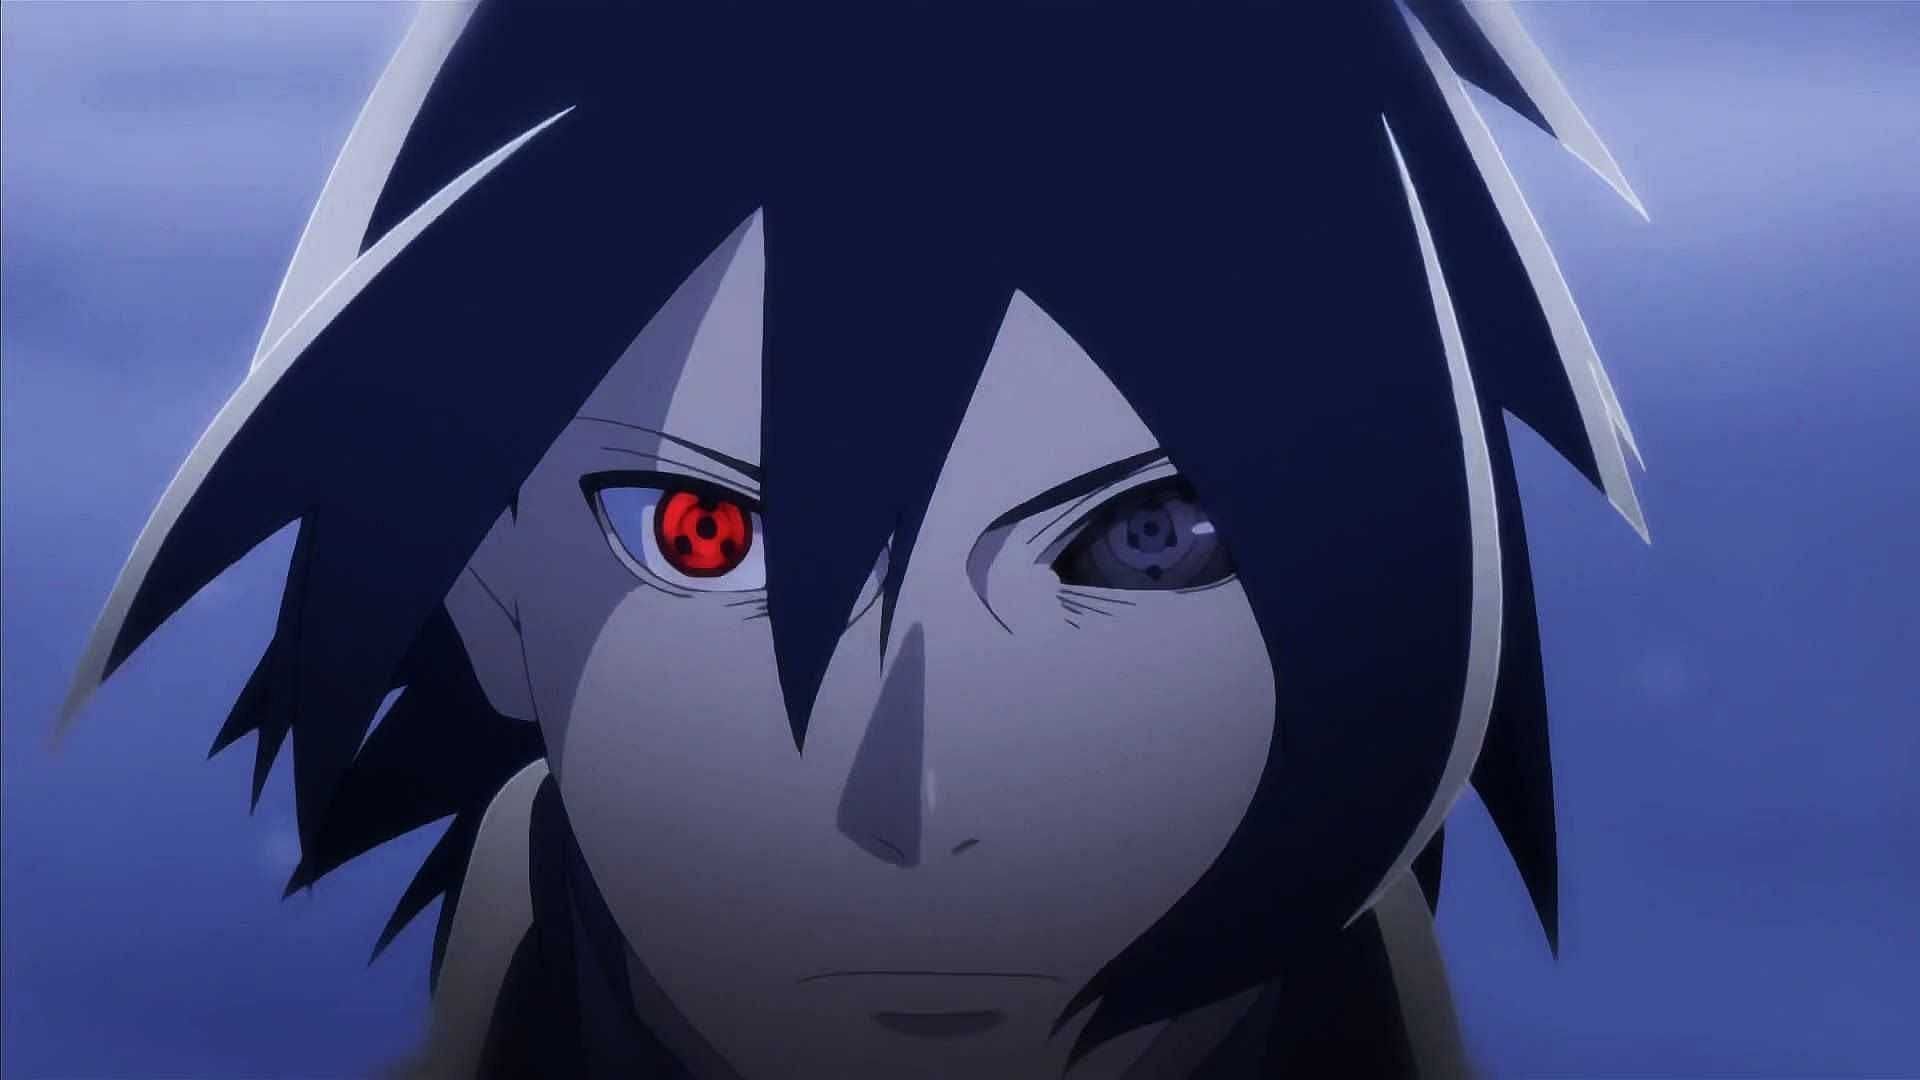 Sasuke from the series (image via Pierrot)